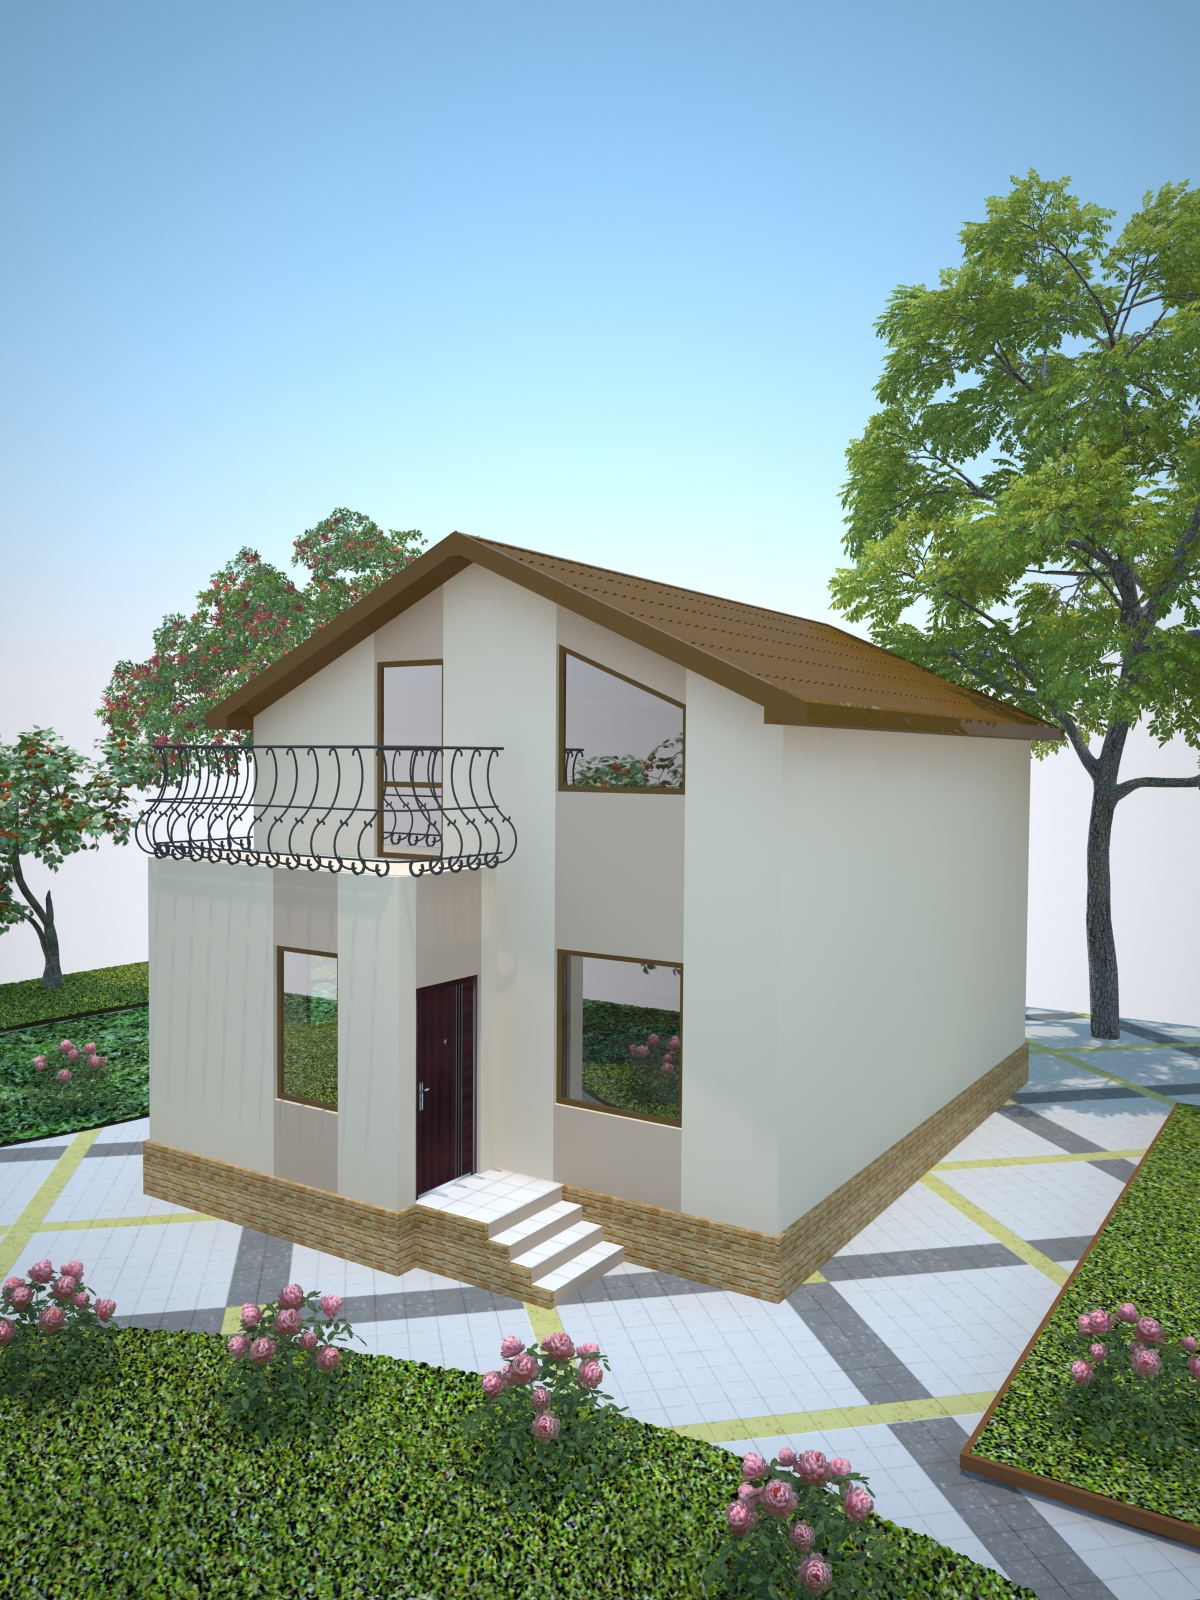 Запущен новый проект по смене квартирного жилья на частный дом...